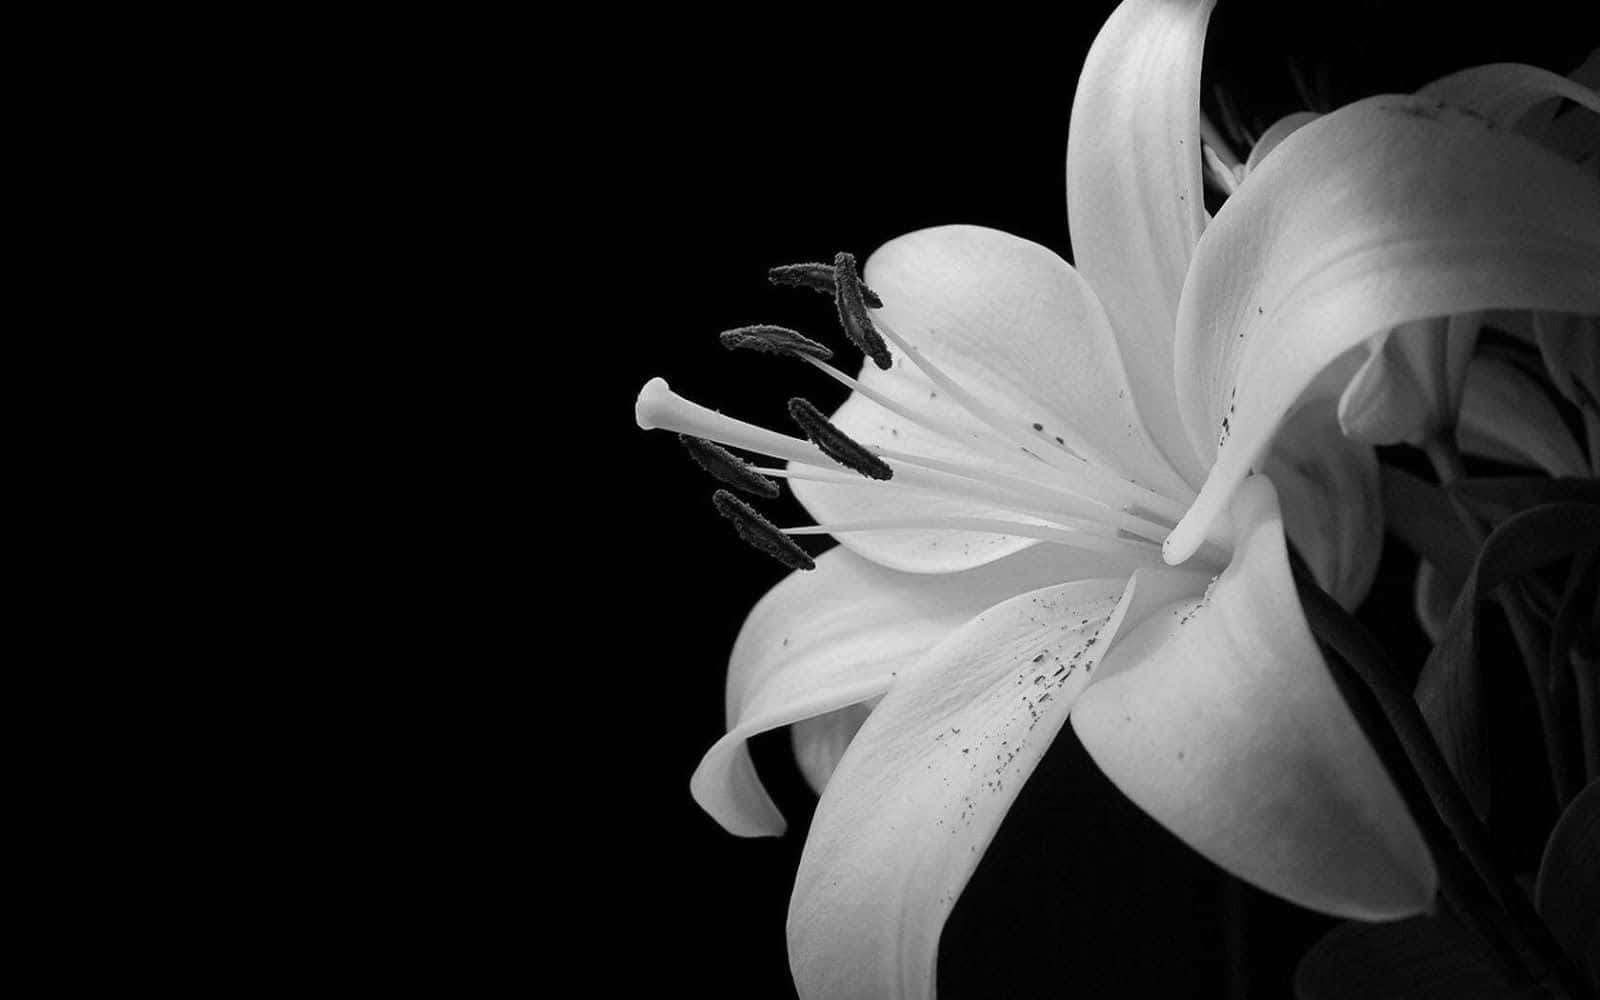 White Flower in Bloom